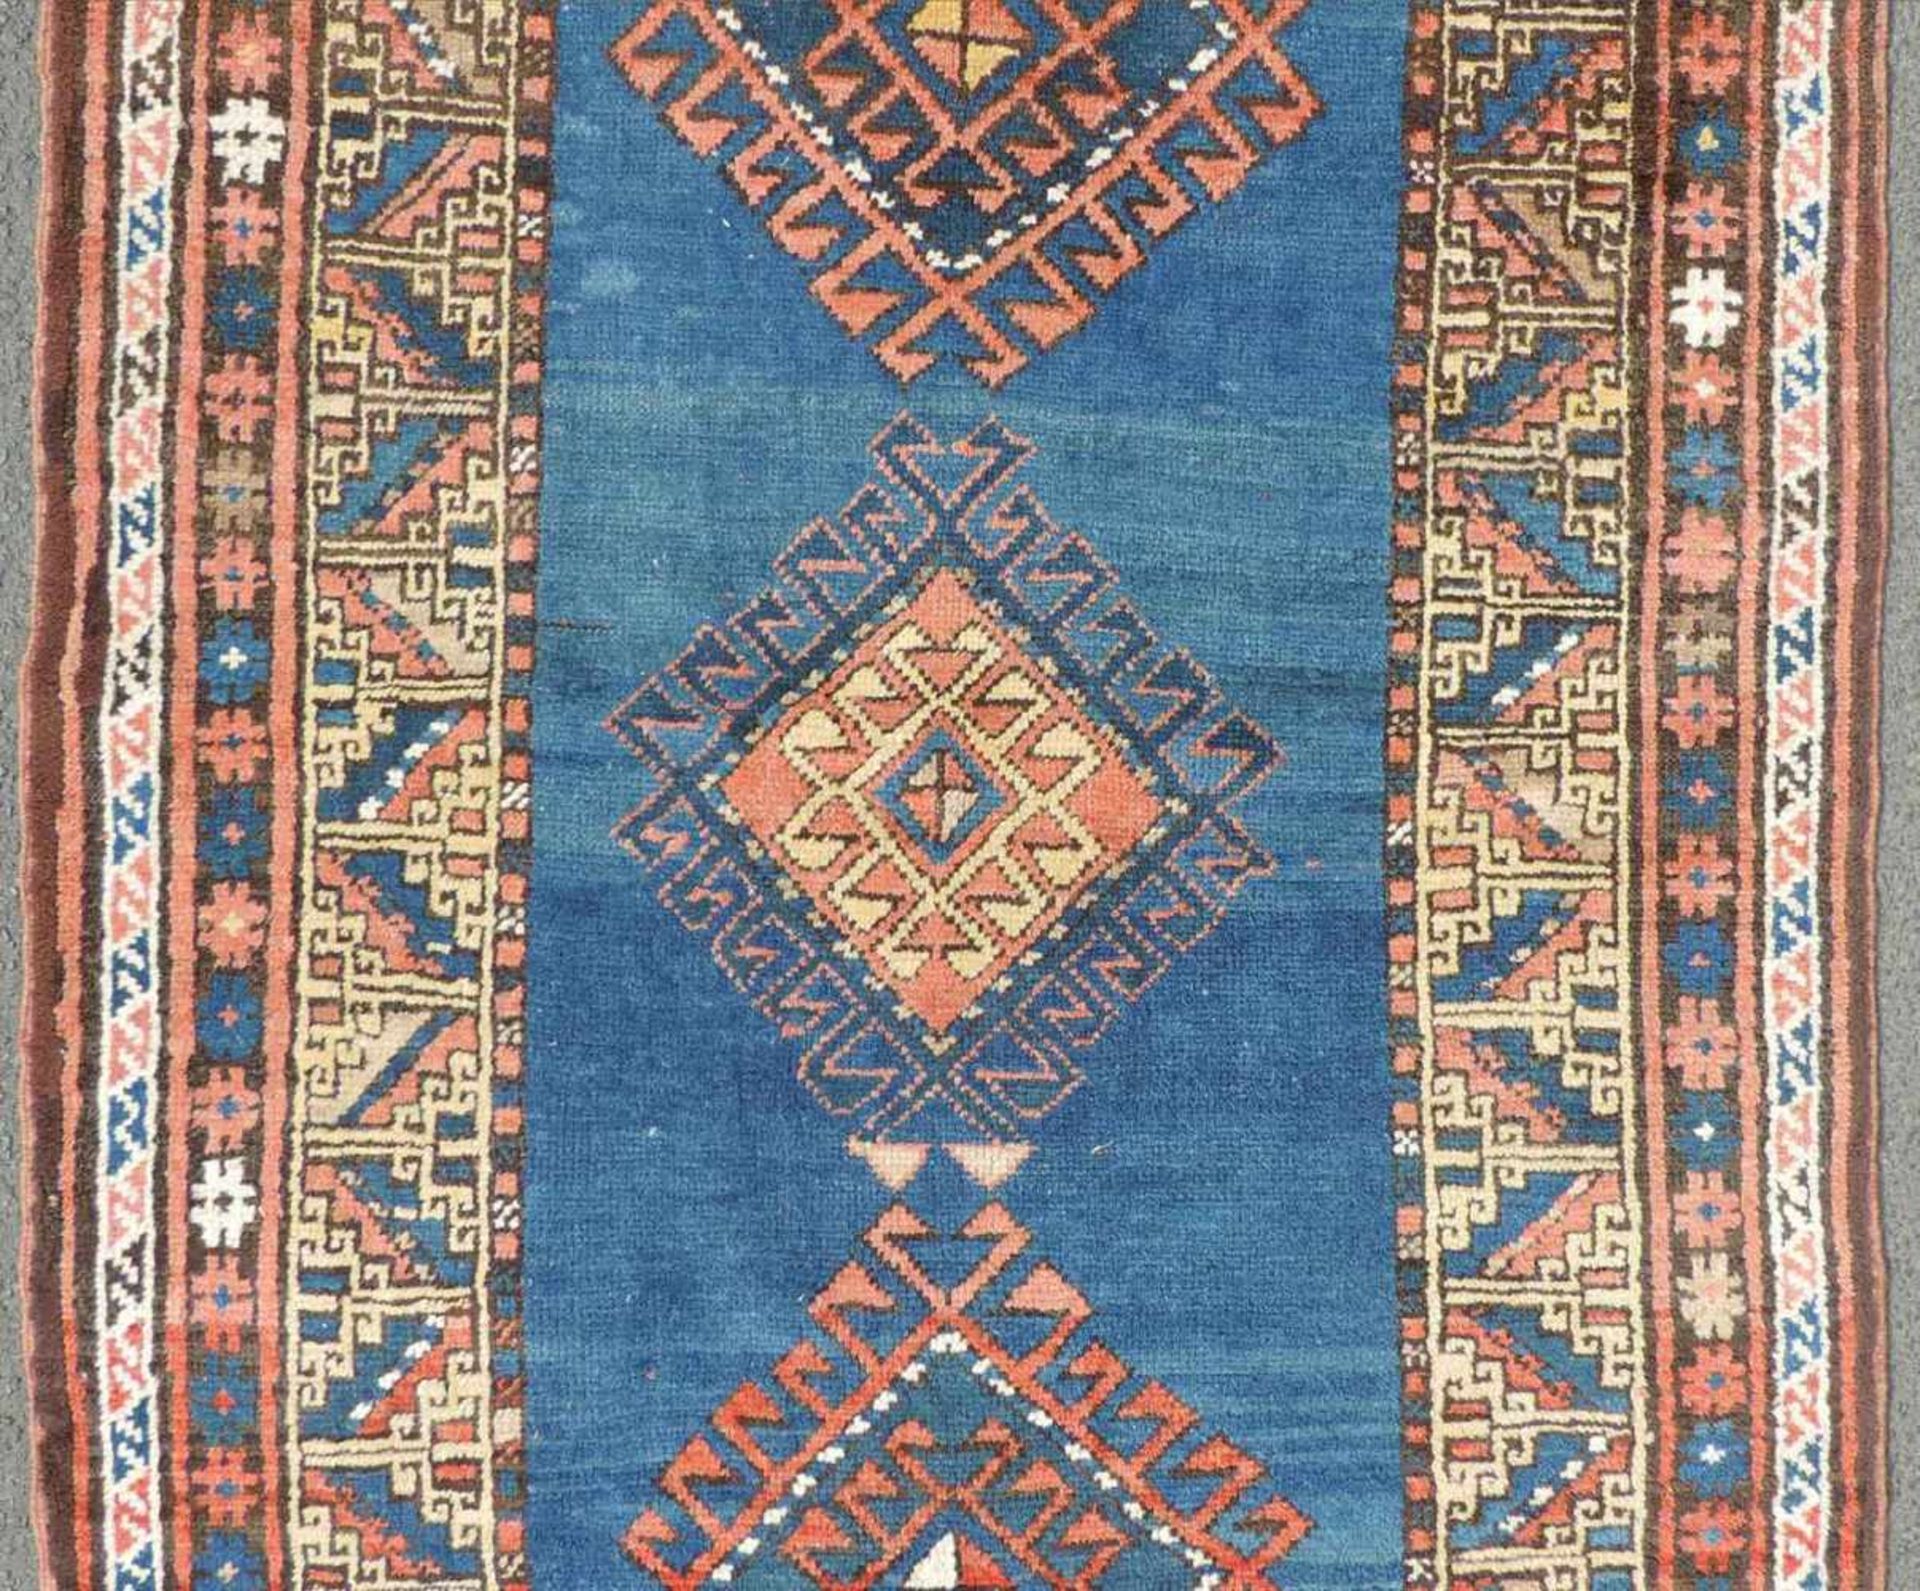 Kasak Orientteppich. Kaukasus. Antik, um 1910. 182 cm x 103 cm. Handgeknüpft. Wolle auf Wolle. - Image 3 of 7